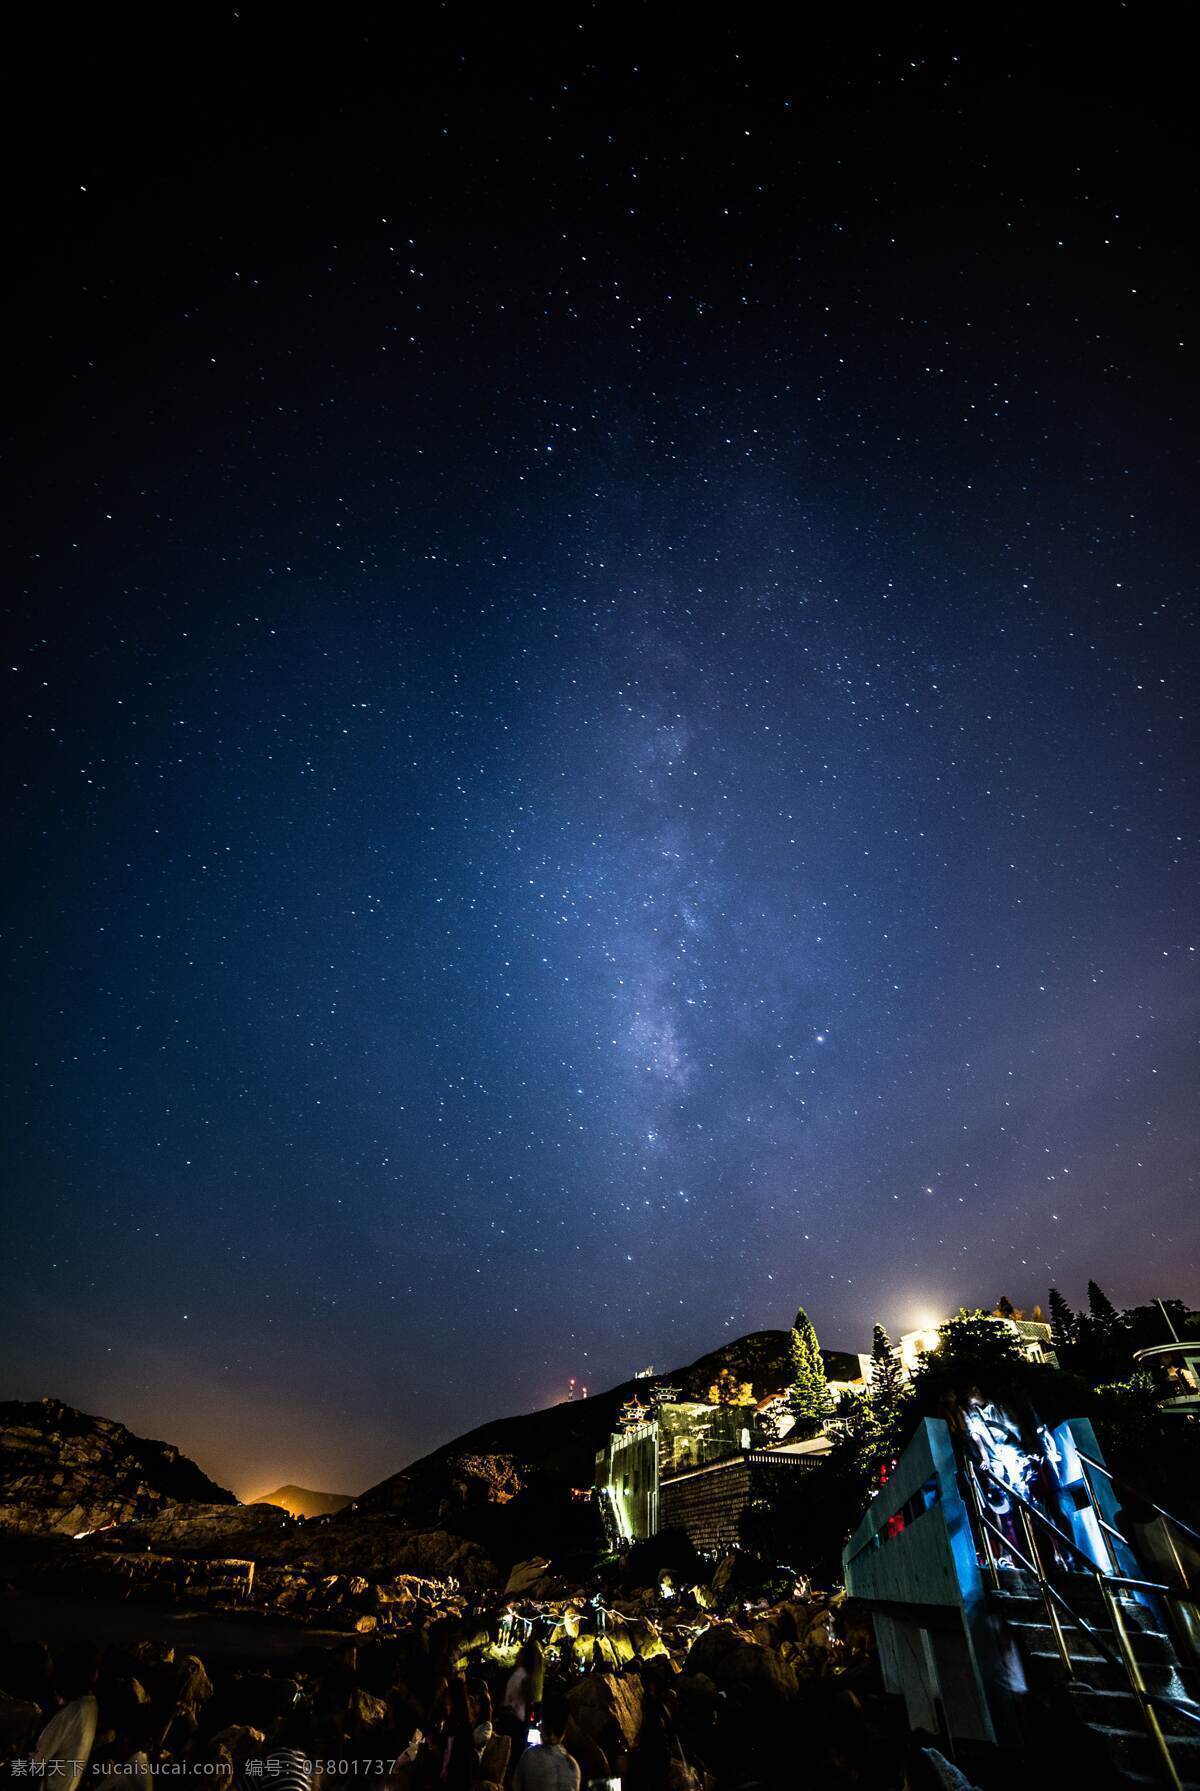 大自然 晚上 夜景 星空 星星 山 山星空 星云 流星 摄影图 自然景观 自然风景